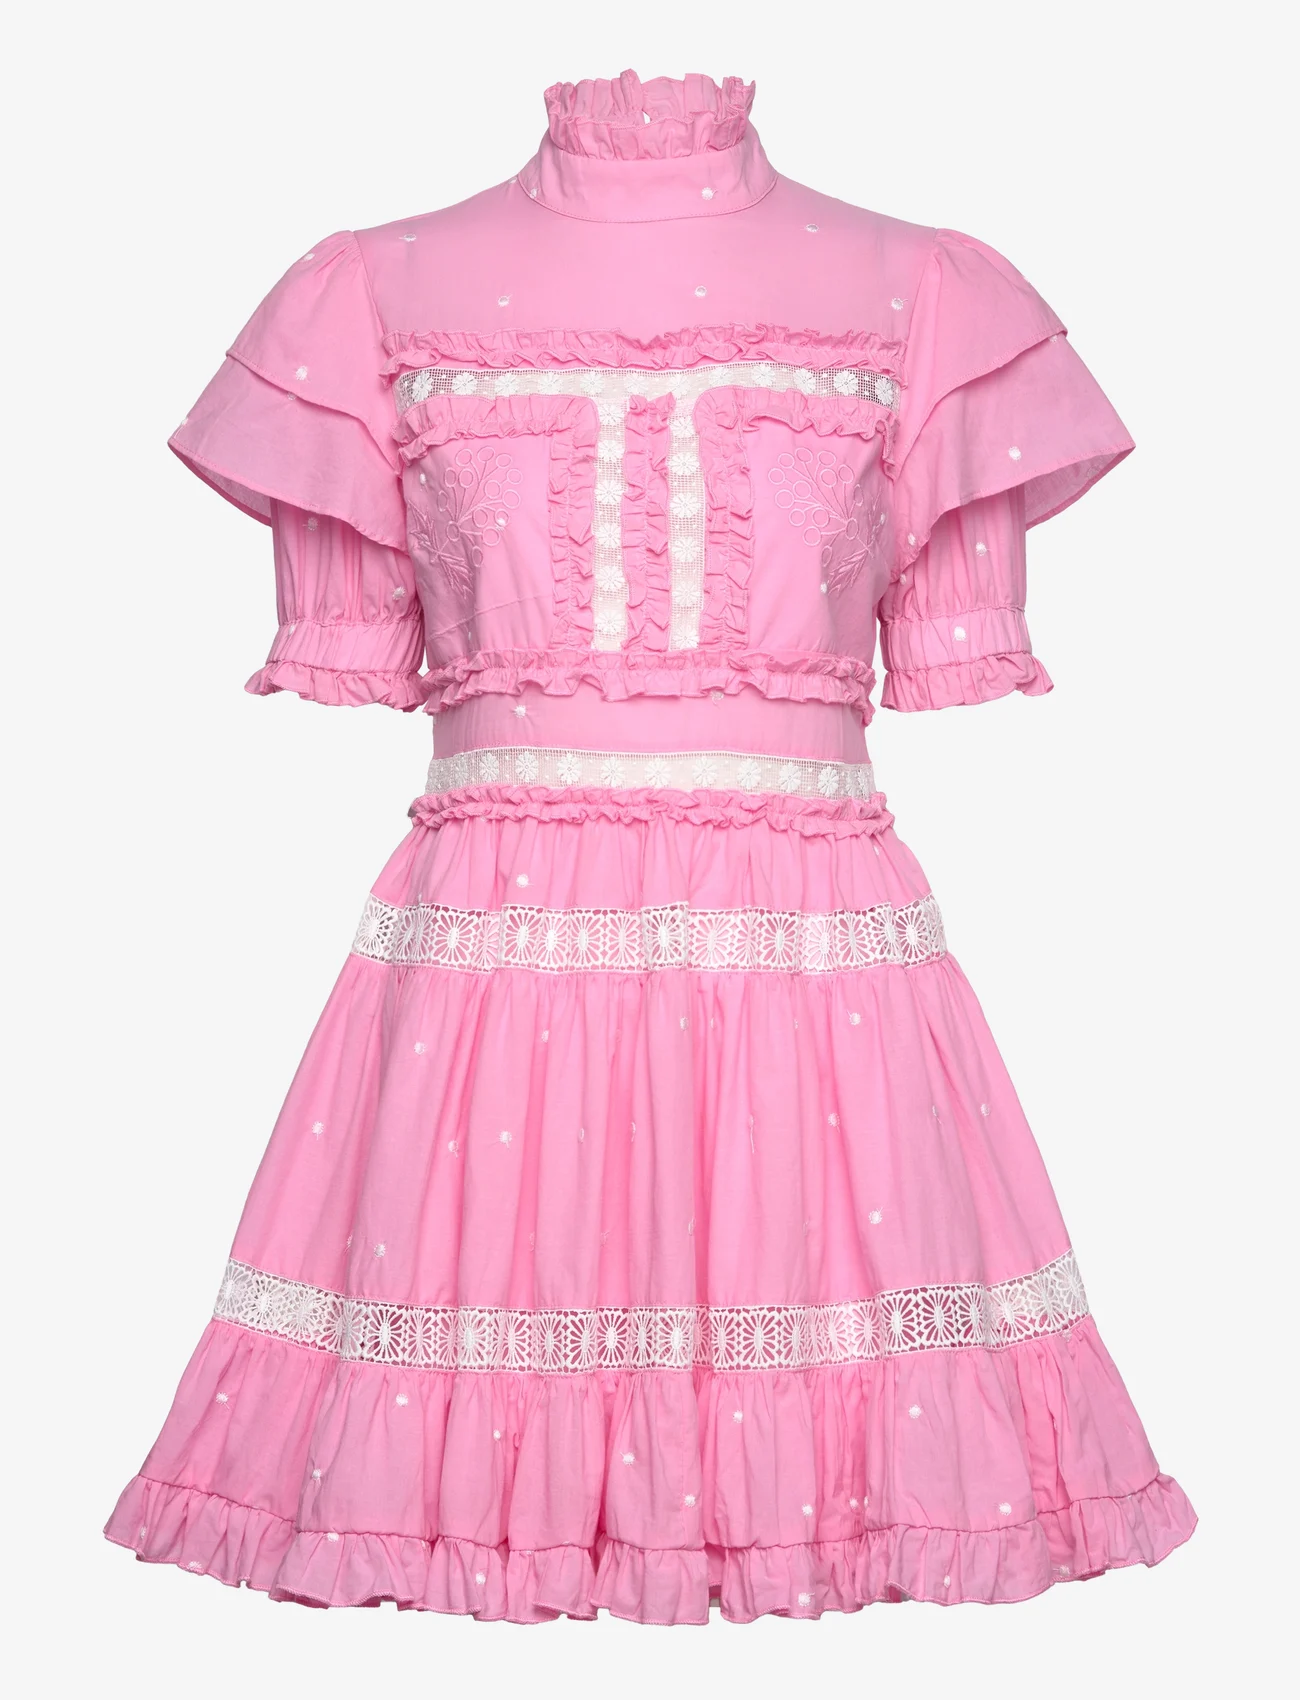 Malina - Iro mini dress - blush pink - 1